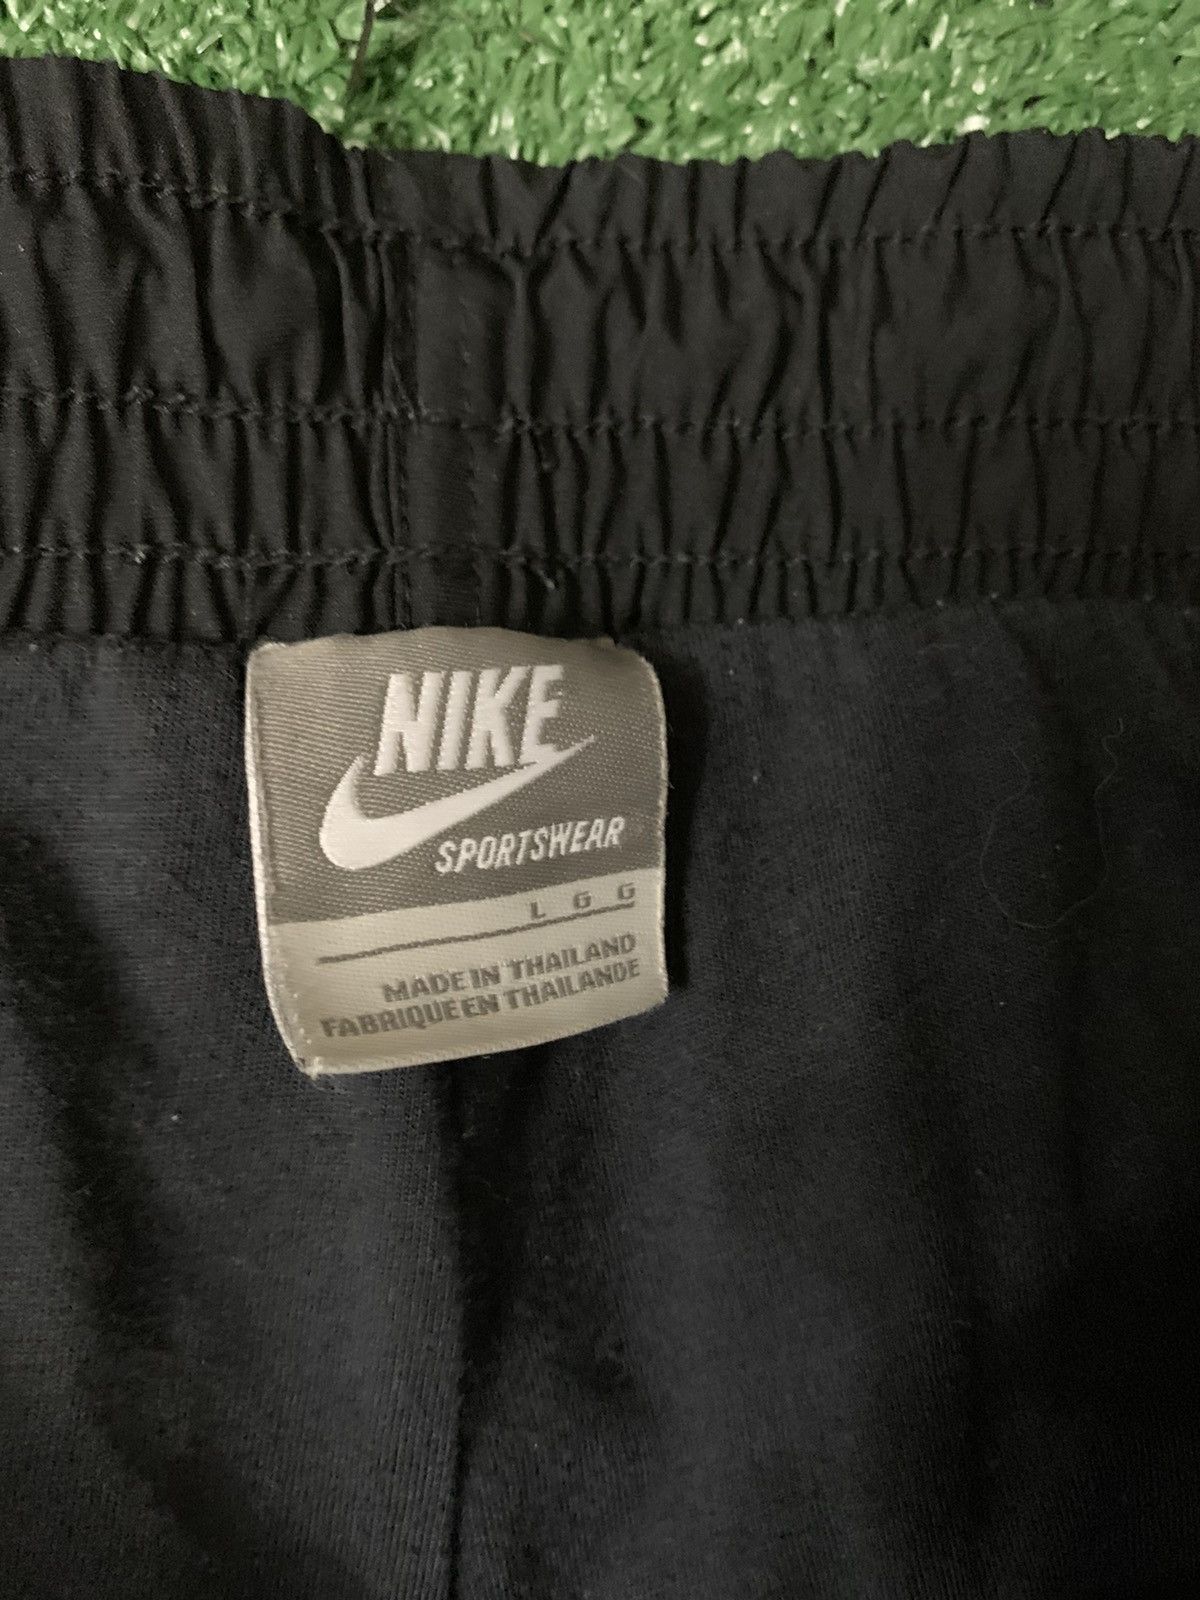 Nike Vintage Nike Sweats Size US 34 / EU 50 - 3 Preview